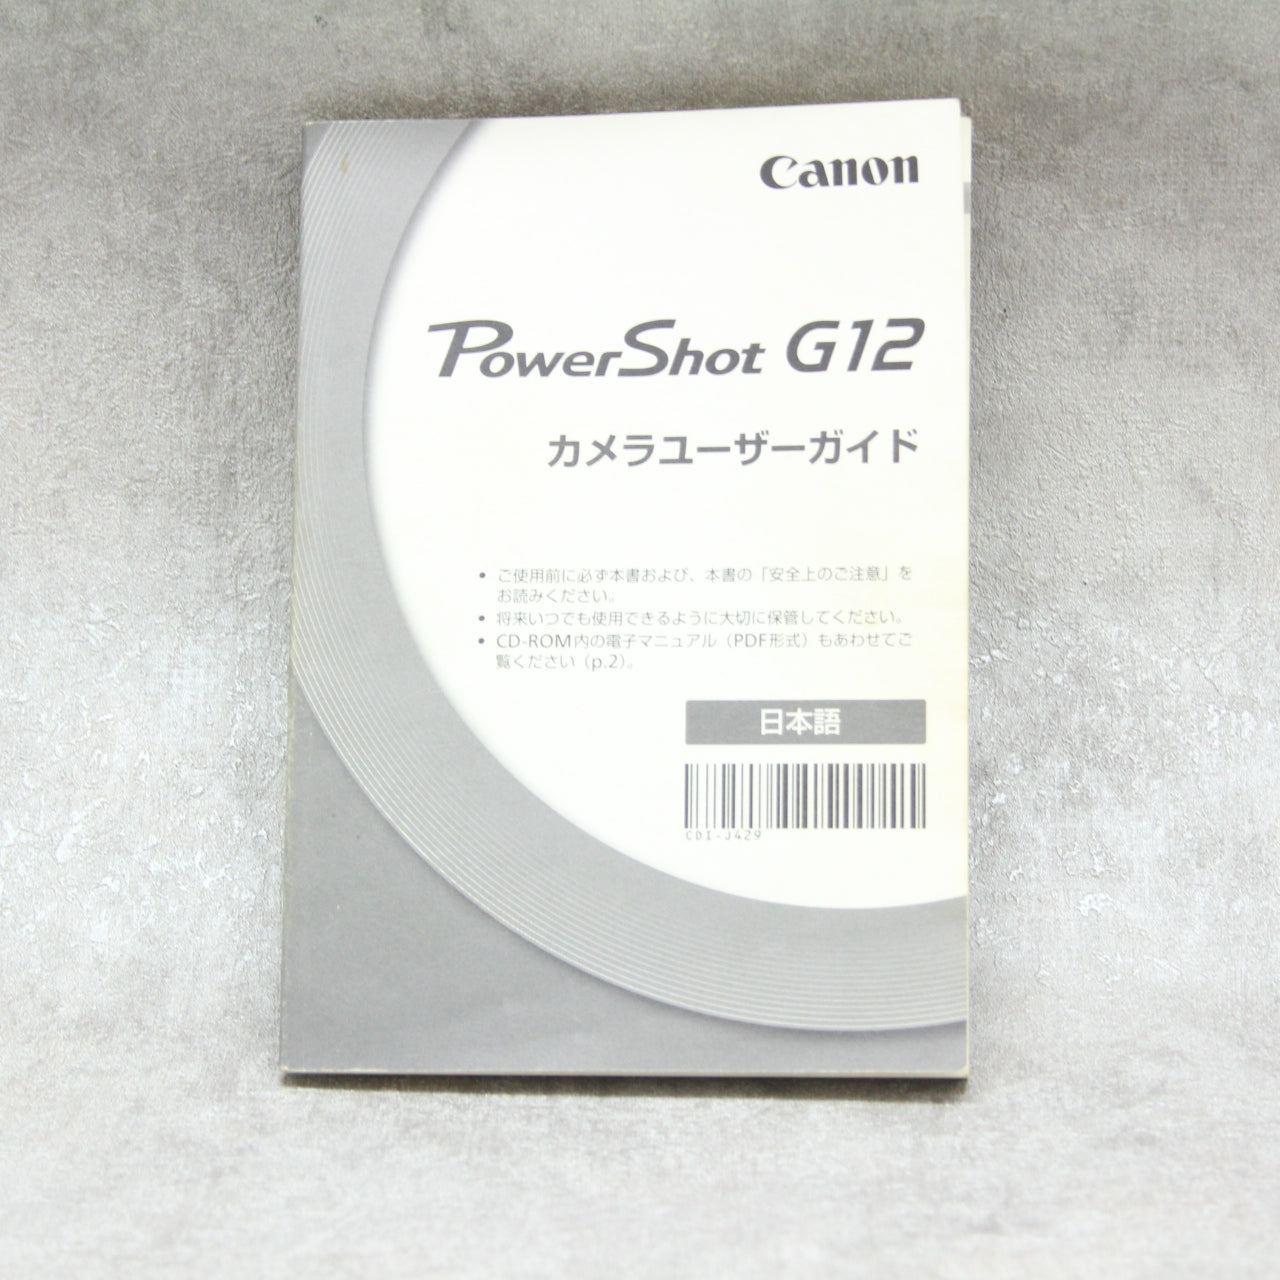 中古品 Canon PowerShot G12 【11月29日(火)のYouTube生配信でご紹介 